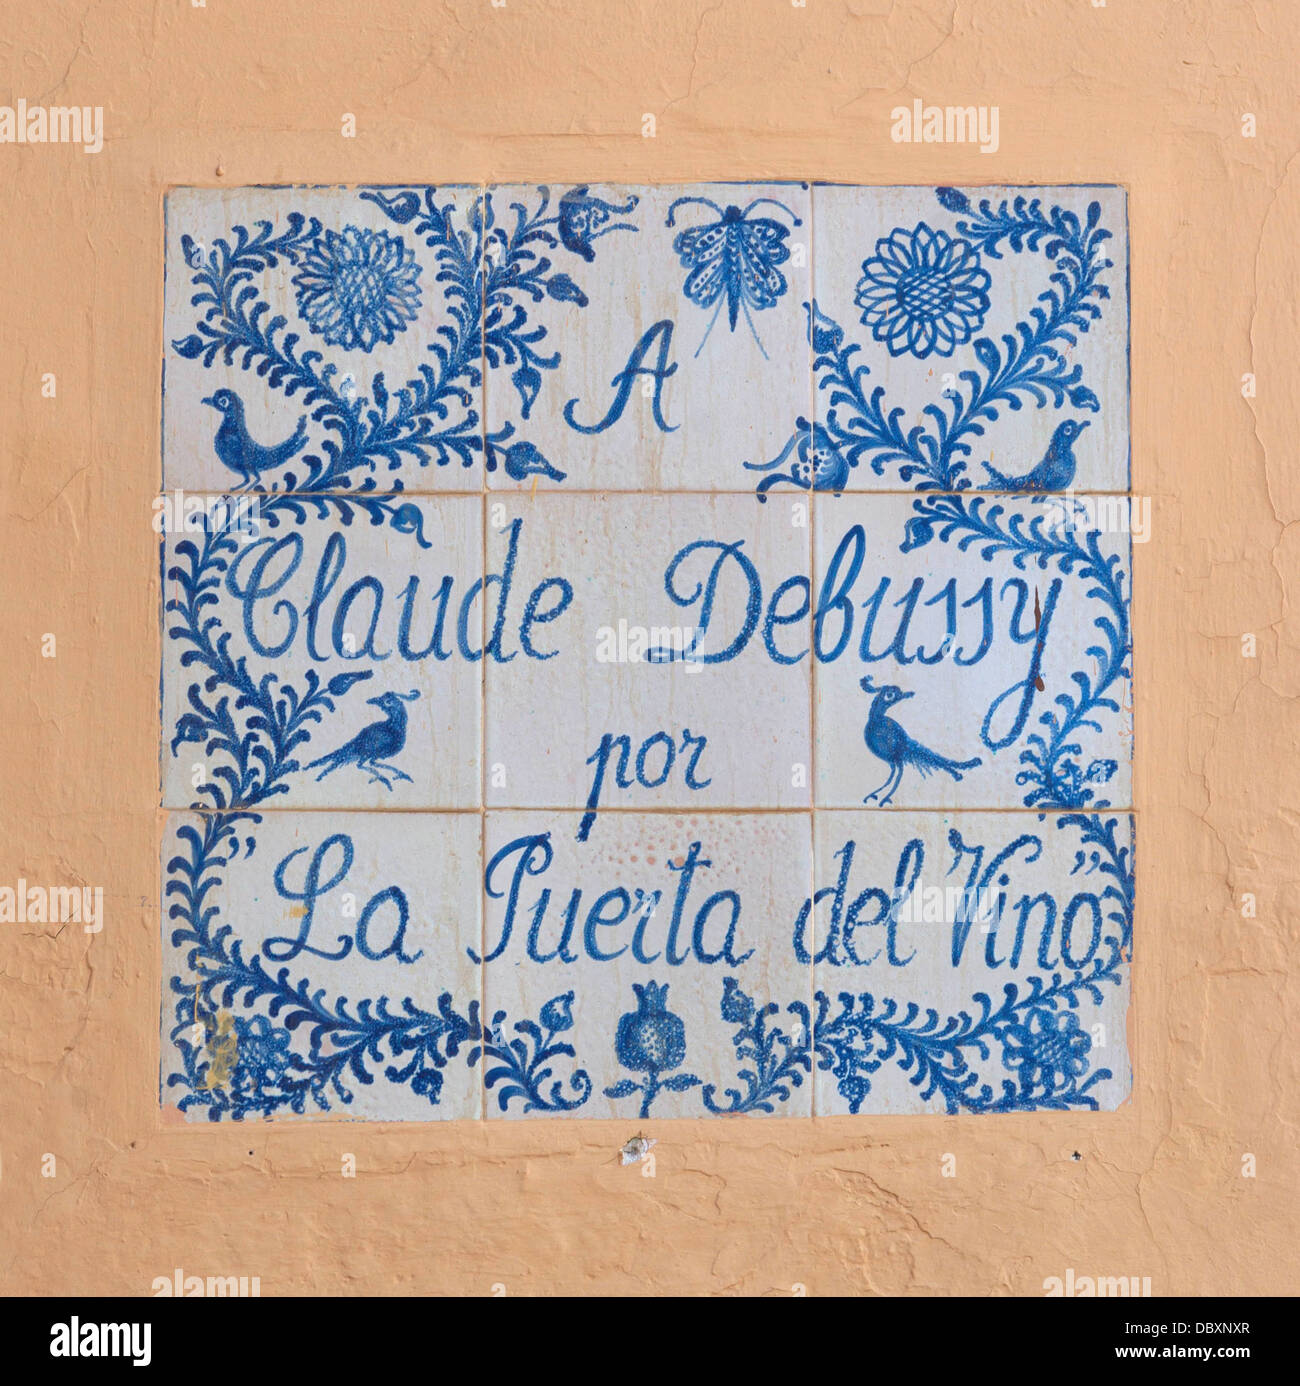 Hommage à Claude Debussy, souvenir de la prélude de piano nommé d'après la 'Puerta del Vino', à l'Alhambra, Grenade, Espagne. Banque D'Images